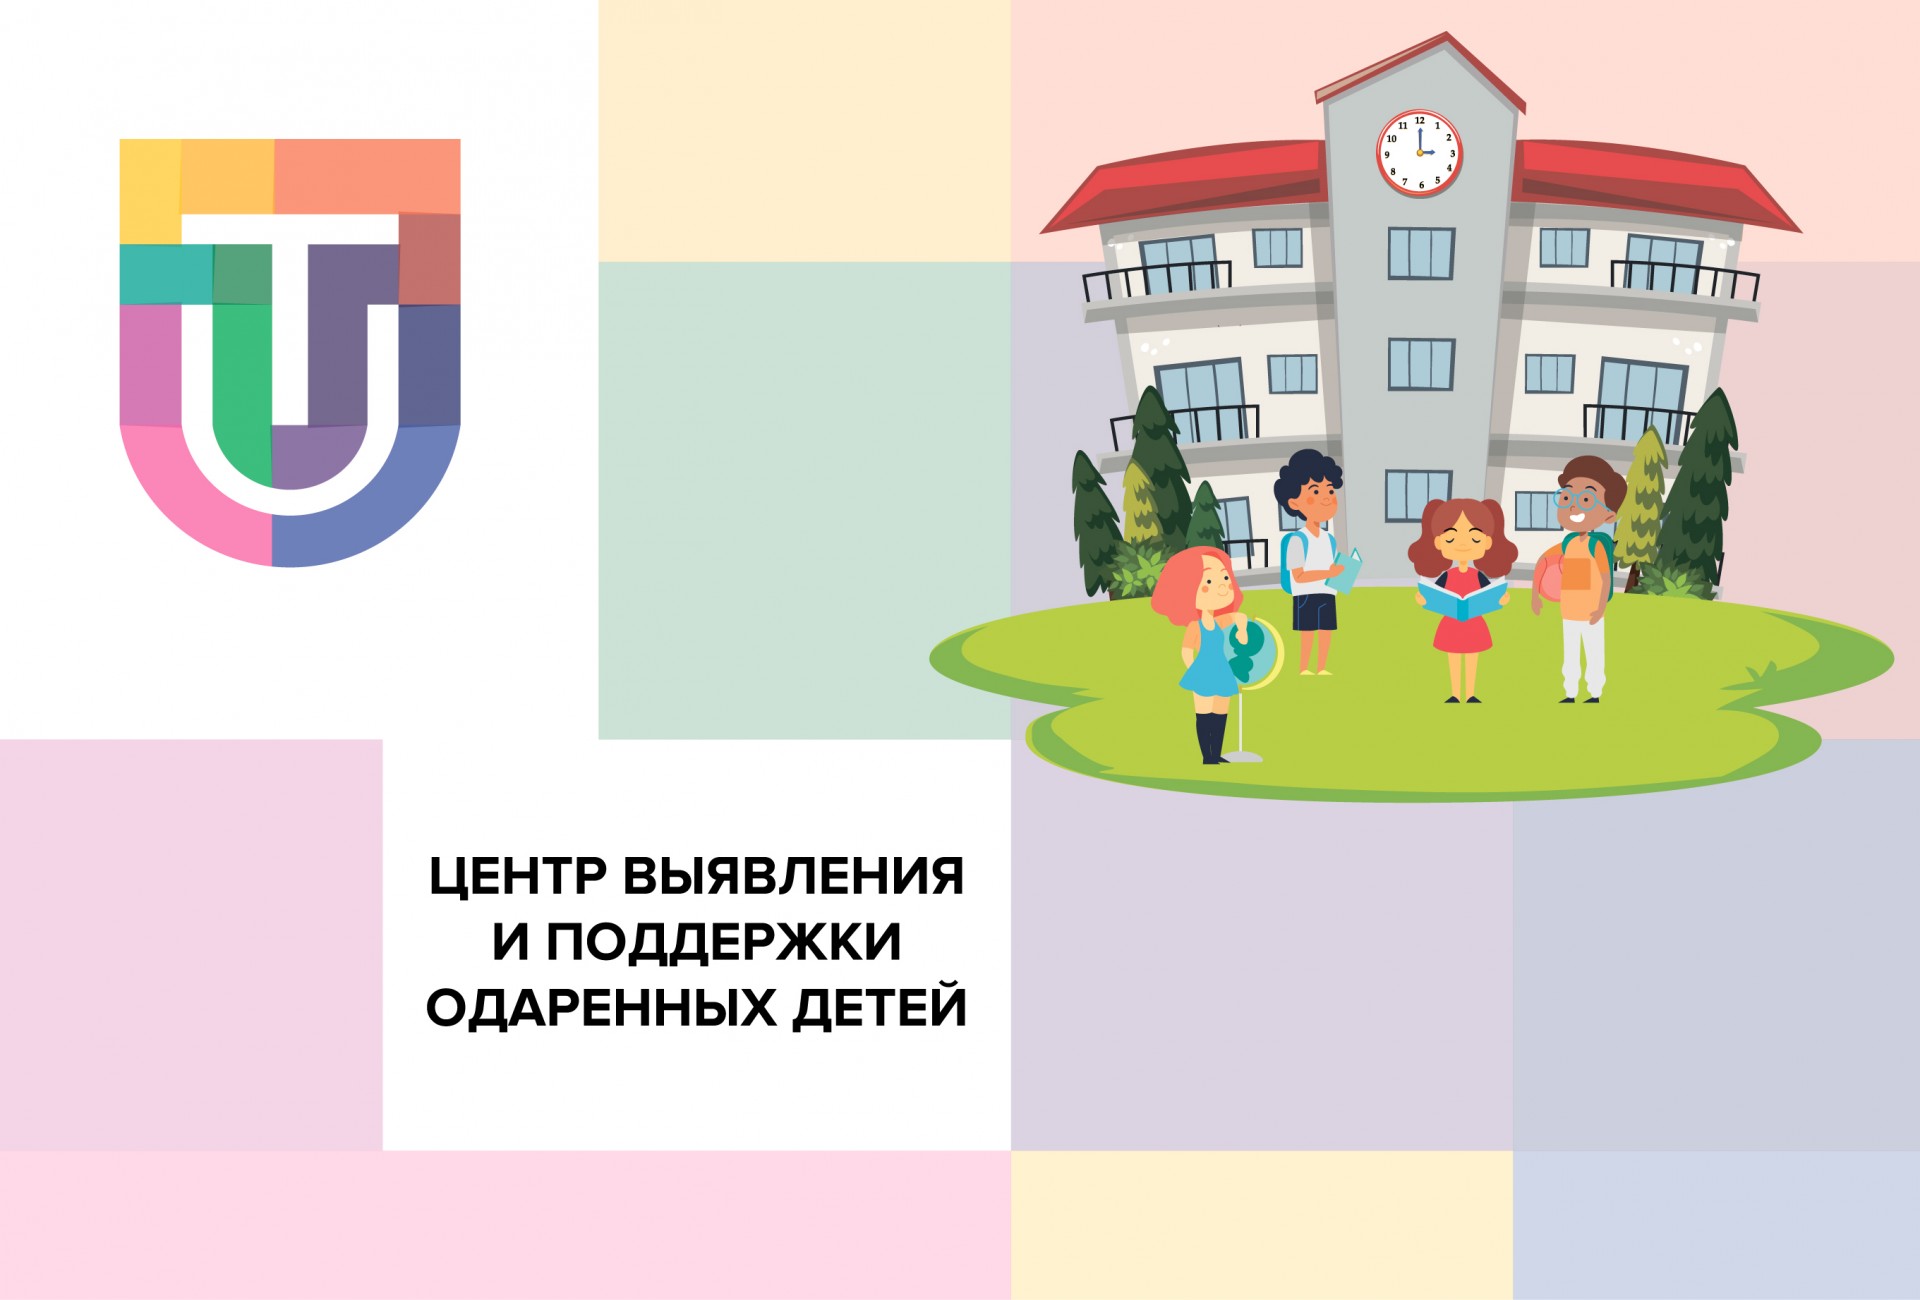 В Татарстане появится Центр выявления и поддержки одаренных детей